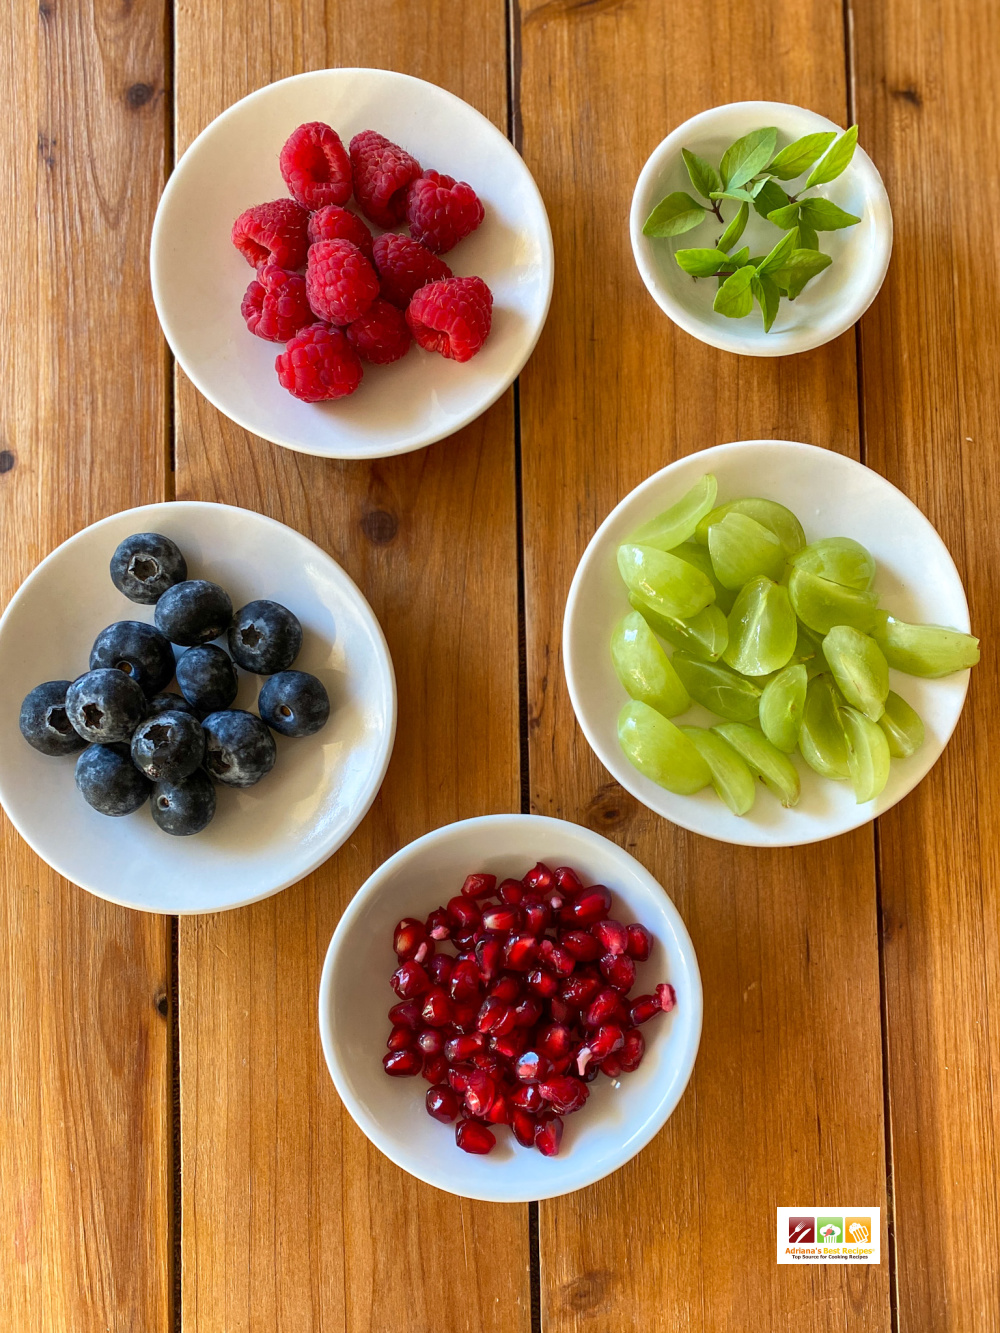 Platos pequeños con bayas, uvas, semillas de granada y albahaca limón